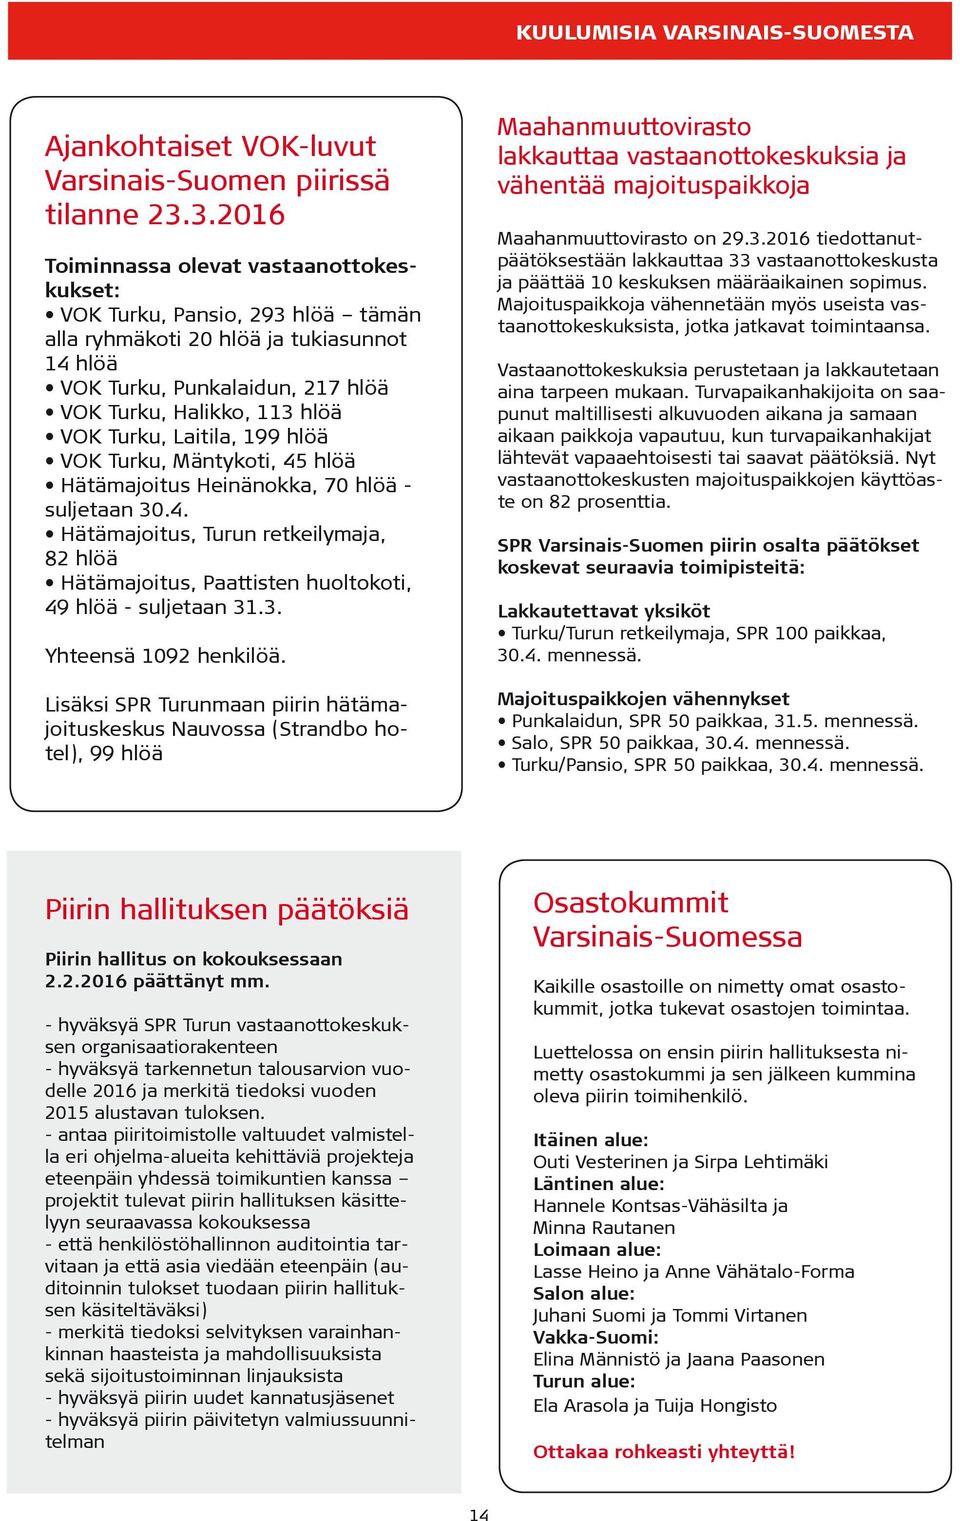 Turku, Laitila, 199 hlöä VOK Turku, Mäntykoti, 45 hlöä Hätämajoitus Heinänokka, 70 hlöä - suljetaan 30.4. Hätämajoitus, Turun retkeilymaja, 82 hlöä Hätämajoitus, Paattisten huoltokoti, 49 hlöä - suljetaan 31.